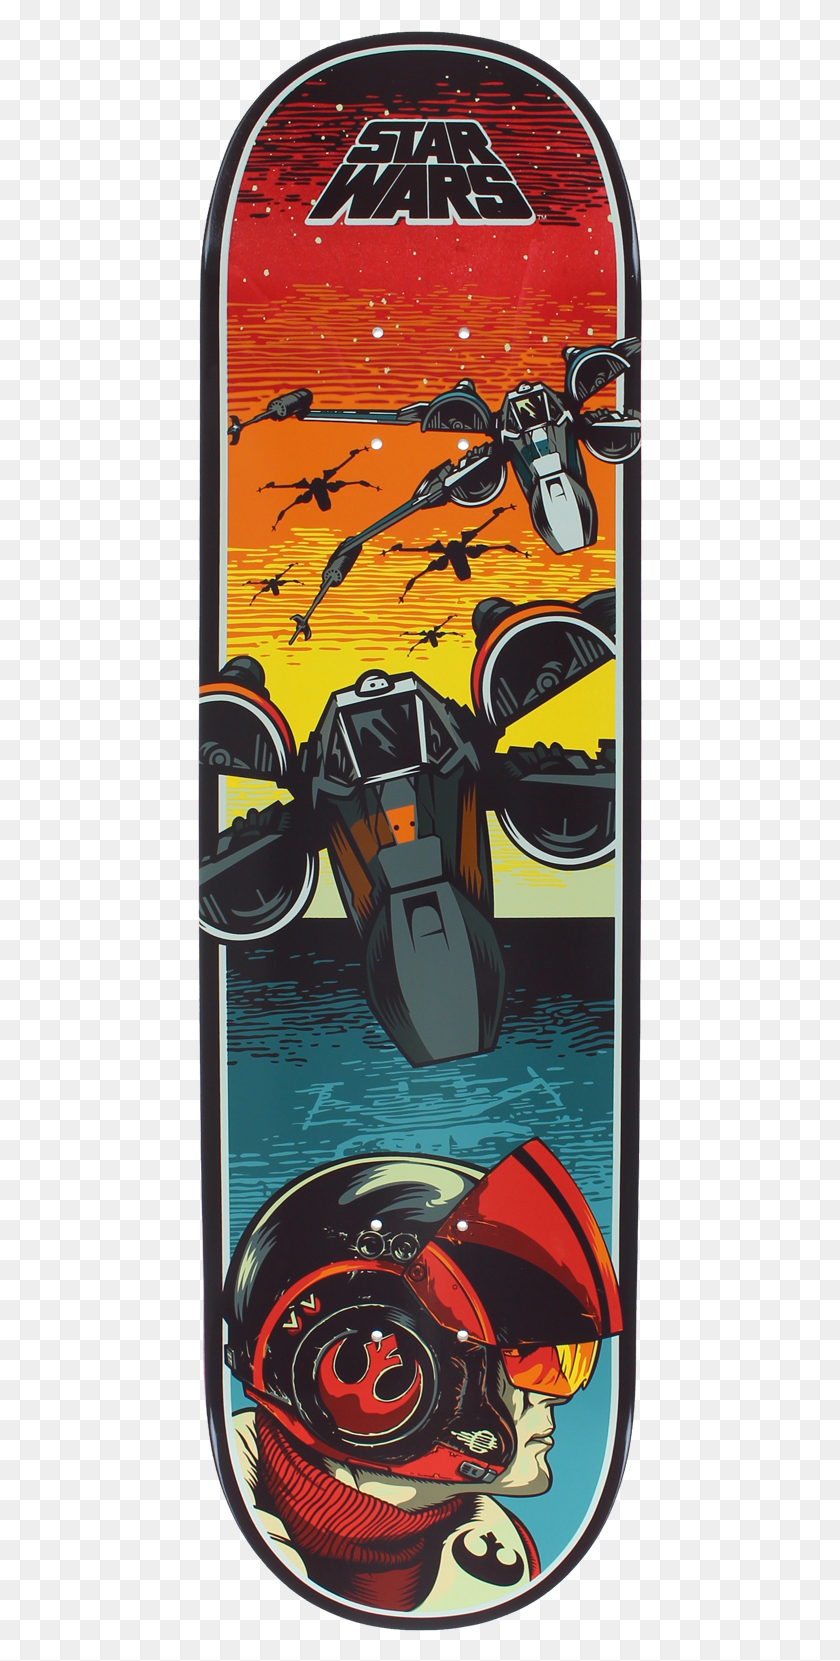 445x1601 Acerca De Universo Extremo Boards Establecido 2009 Universo Skateboard Deck, Poster, Publicidad, Casco Hd Png Descargar